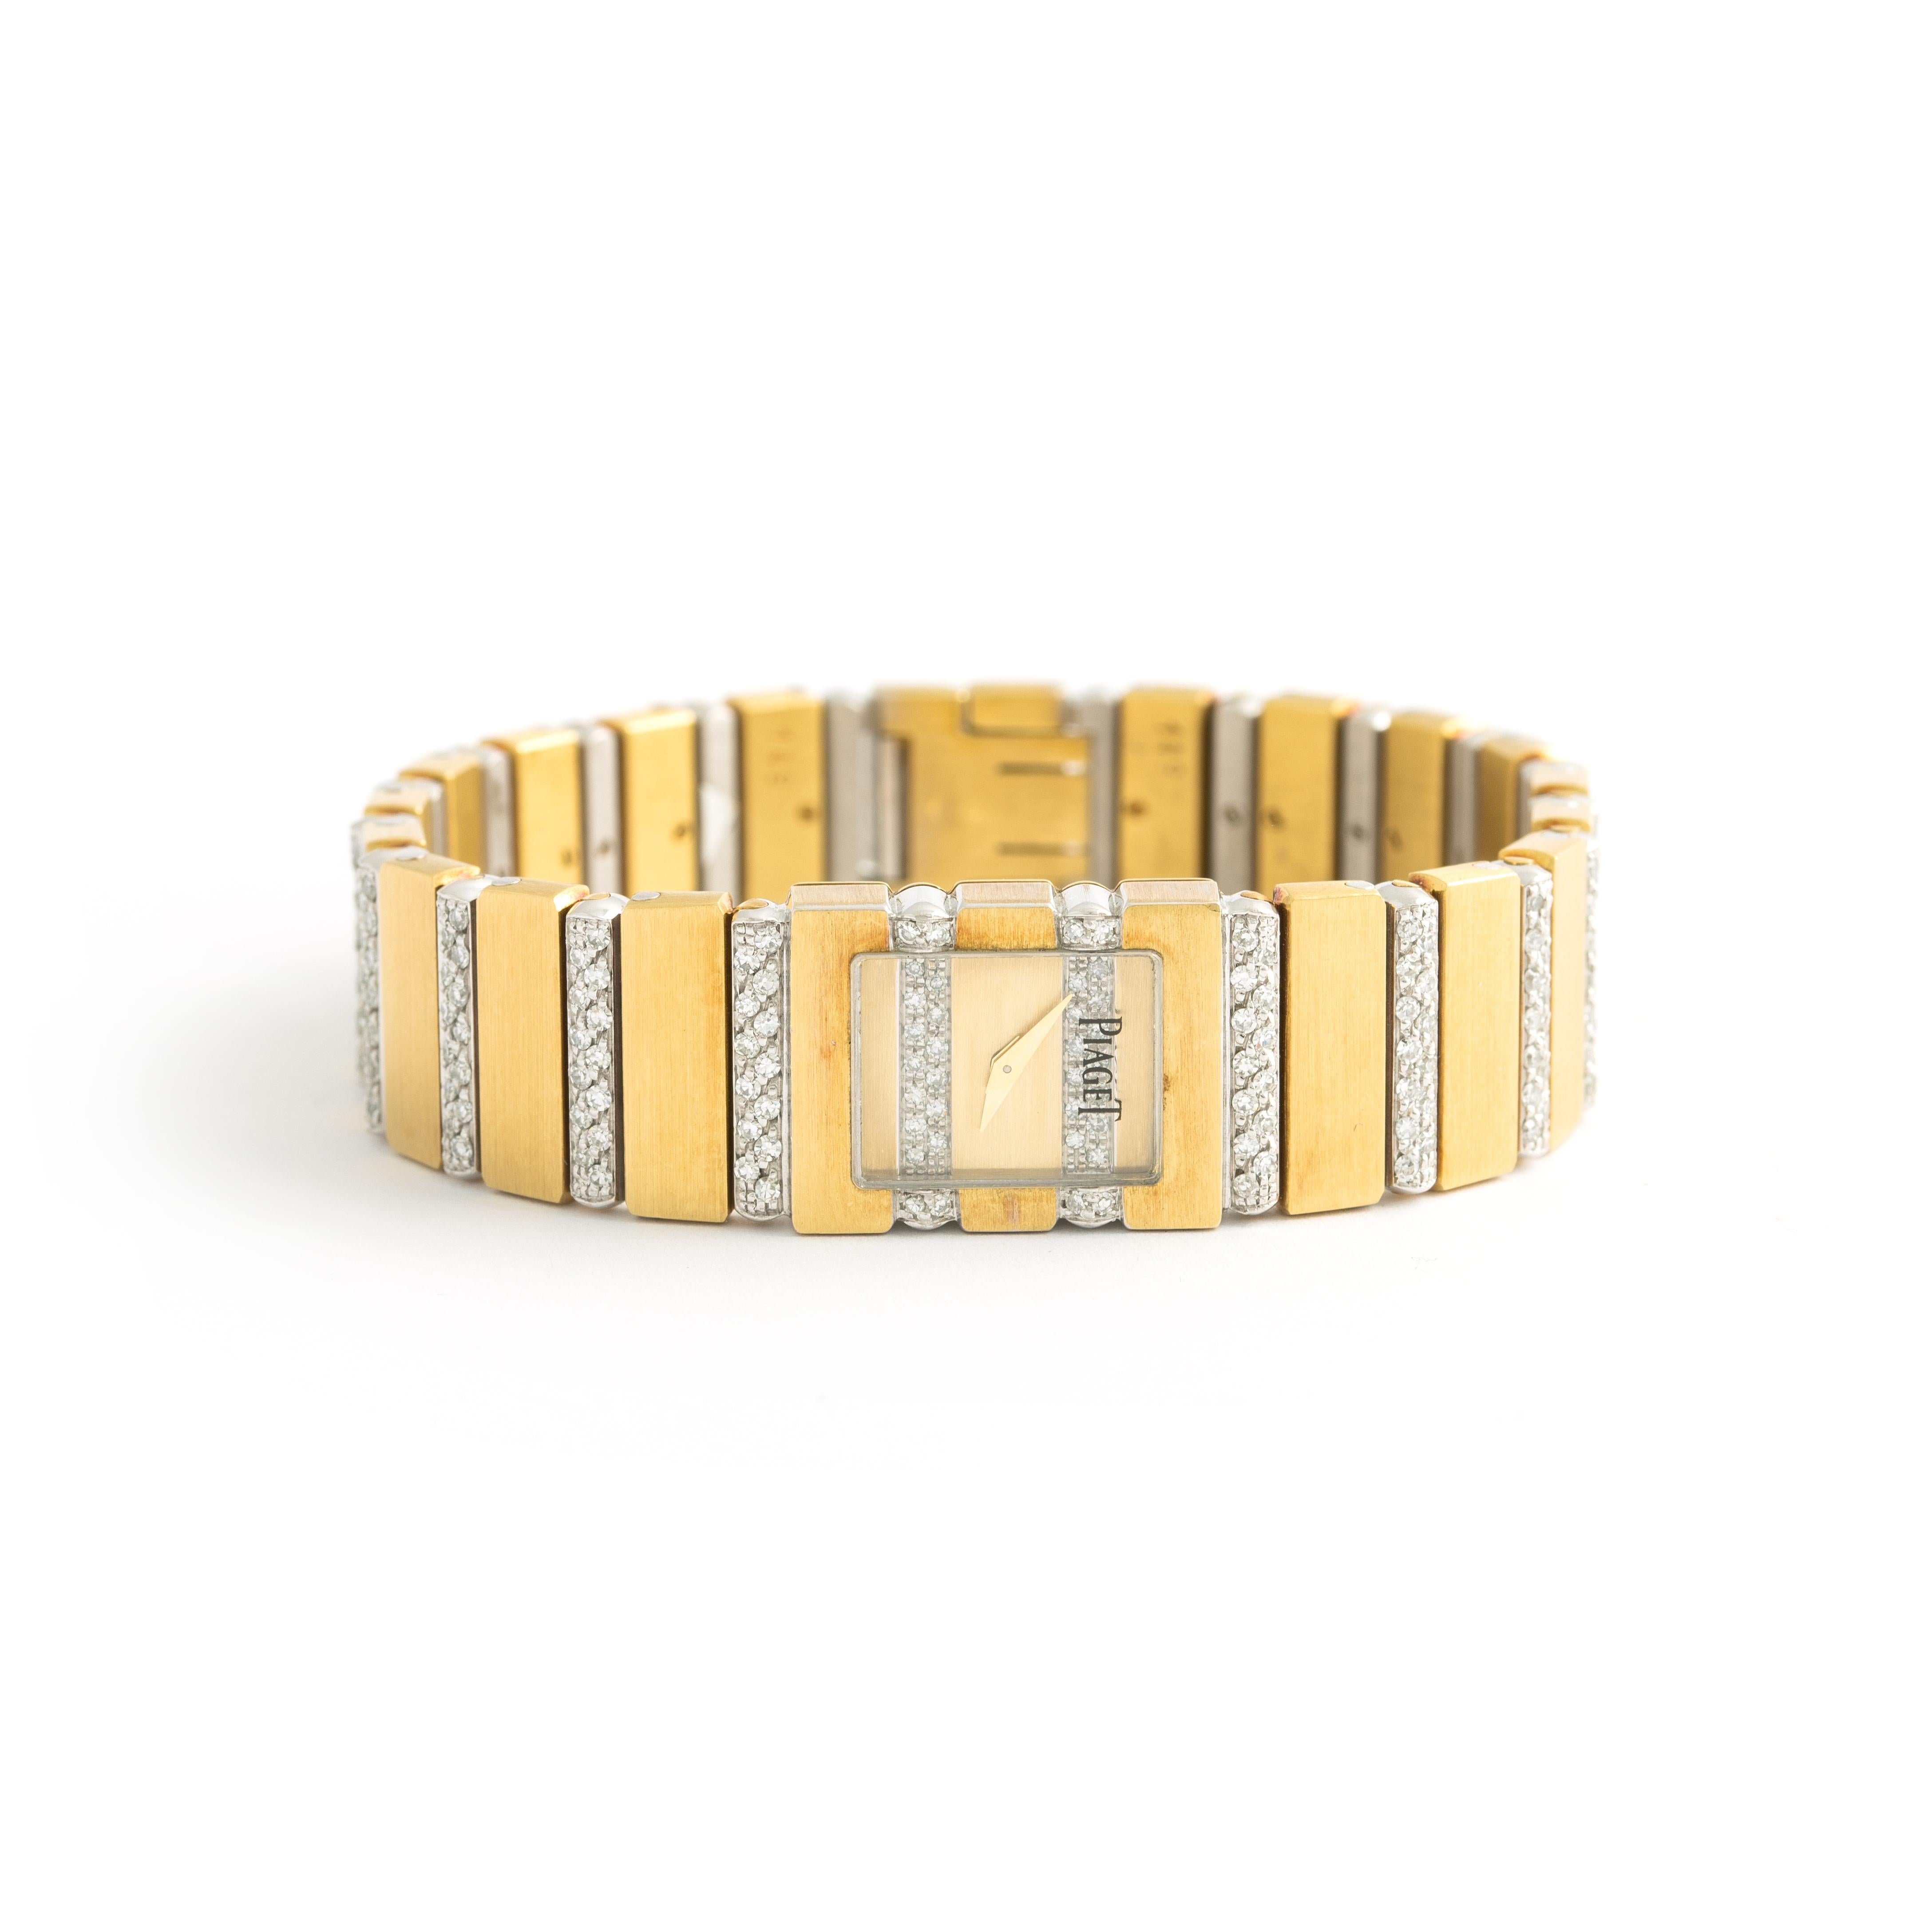 Piaget Mini Diamond Yellow Gold 18K - Quartz. 
Or jaune 18K ( 14 x 18 mm ).
Longueur : 16.00 cm
Largeur du bracelet : 11 mm. à 14 mm.
Boîte contemporaine Piaget.

Poids total : 72,25 grammes

Nous ne garantissons pas que le mouvement fonctionne.
